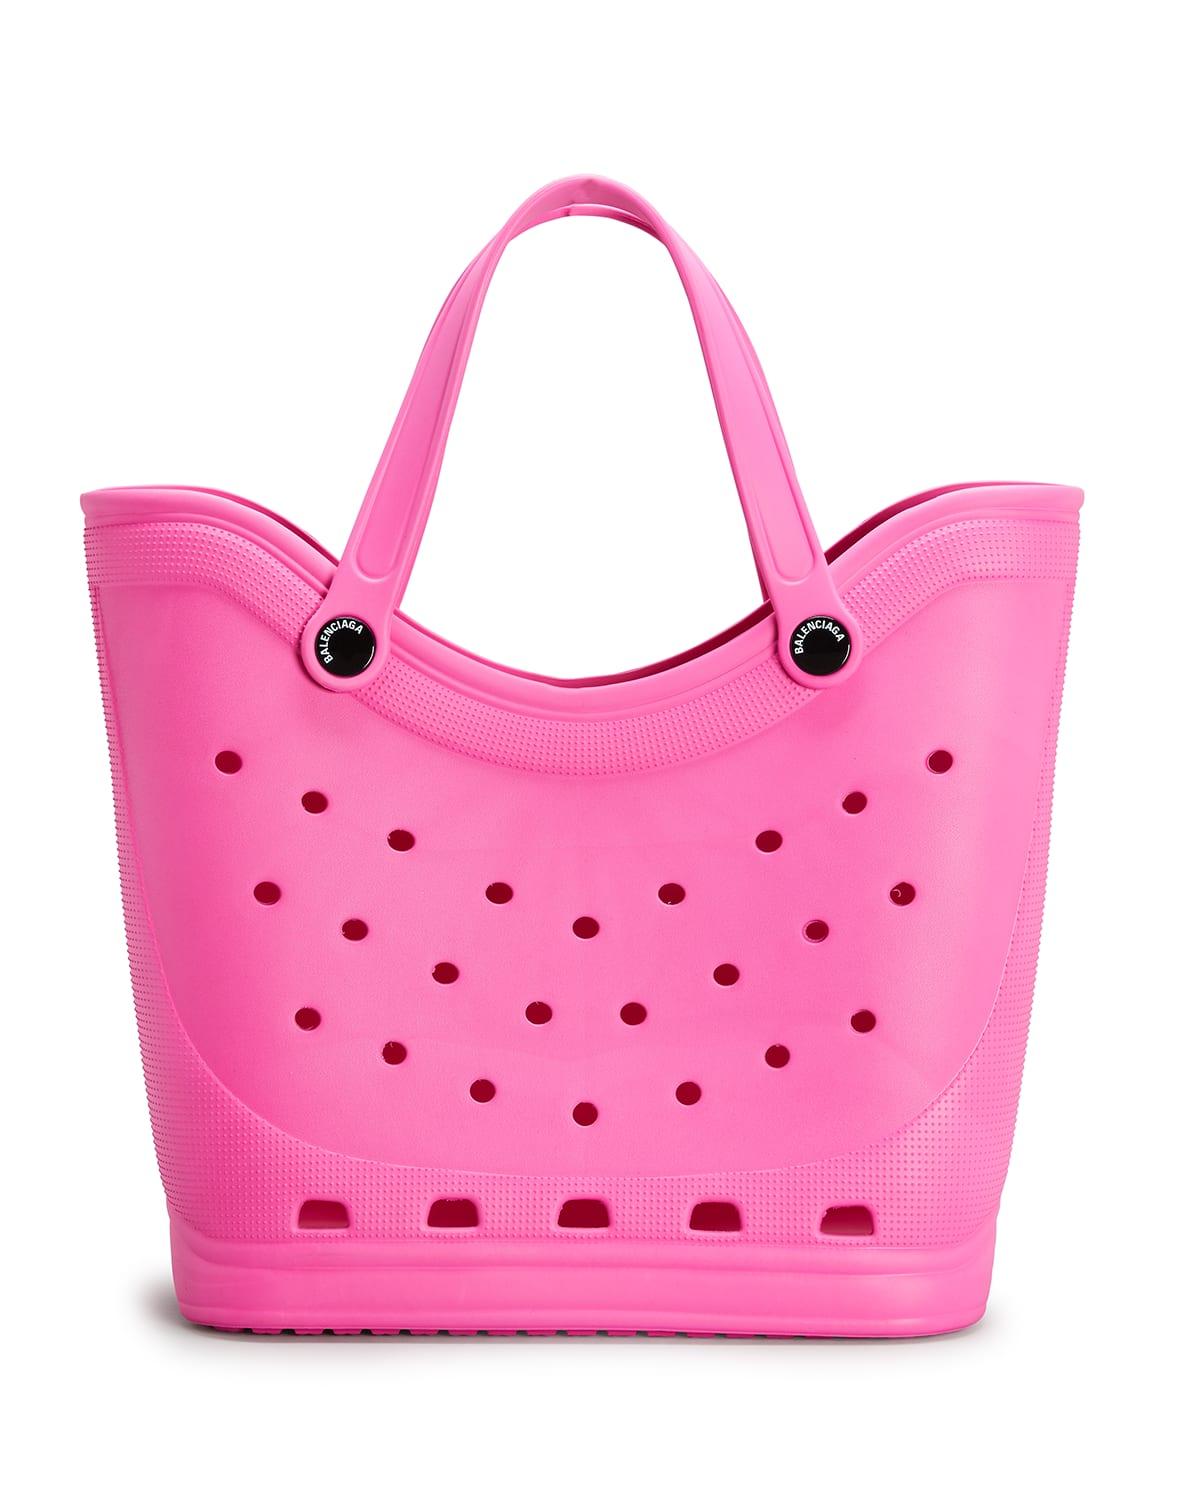 Balenciaga X Crocs Eva Tote Bag in Pink | Lyst